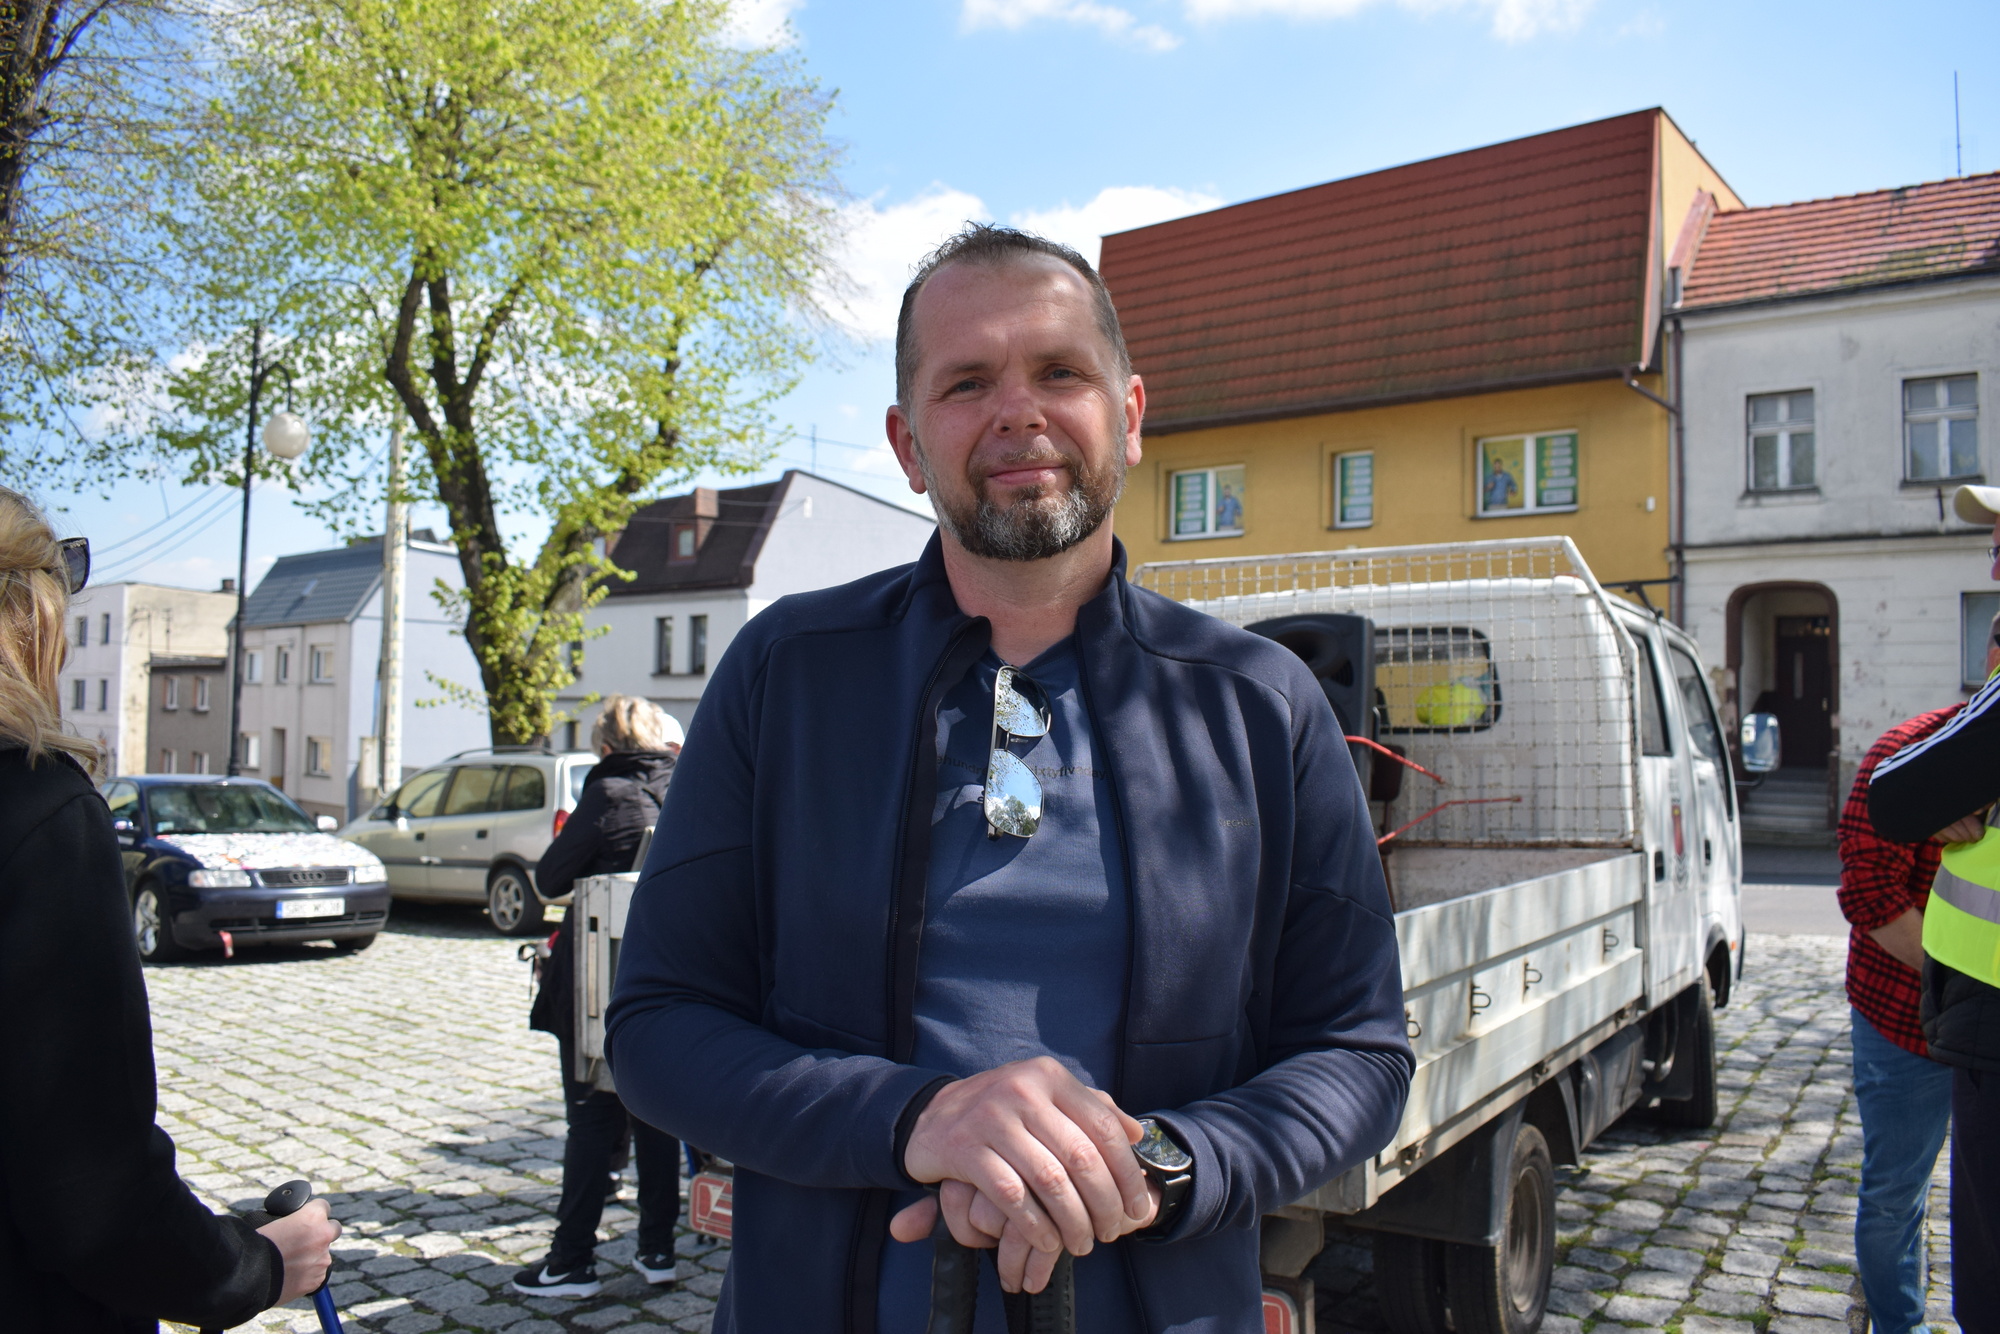 - Na początku gdy organizowaliśmy Nordic Walking uczestników było około setki. Teraz niestety z roku na rok jest ich coraz mniej, ale nie rezygnujemy z tego wydarzenia. Dalej chcemy zachęcać ludzi do aktywnego spędzania czasu - mówi burmistrz Andrzej Strzedulla.